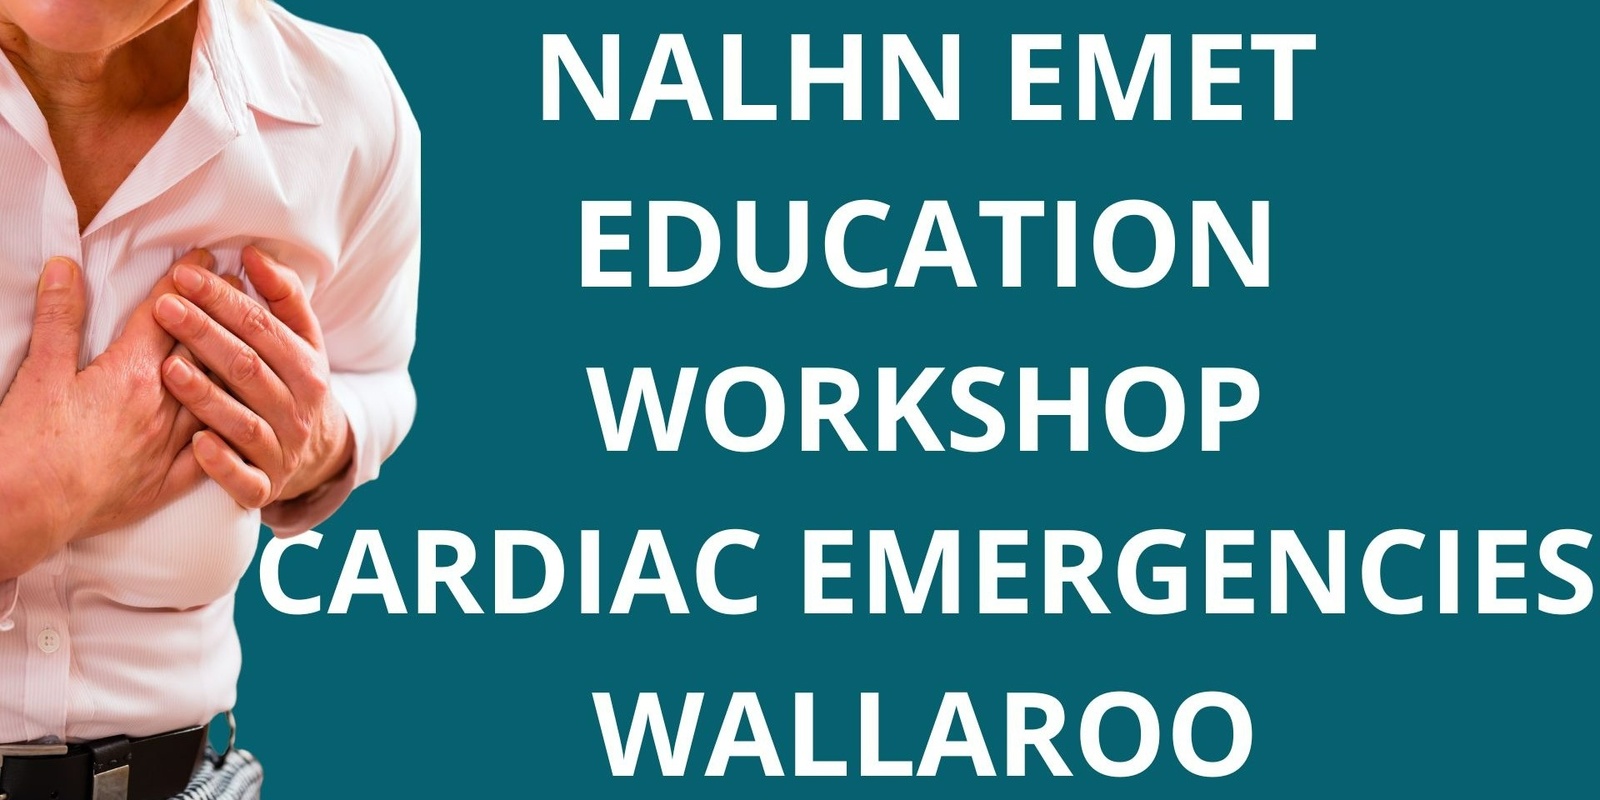 Banner image for NALHN EMET Evening - Cardiac Emergencies Wallaroo 